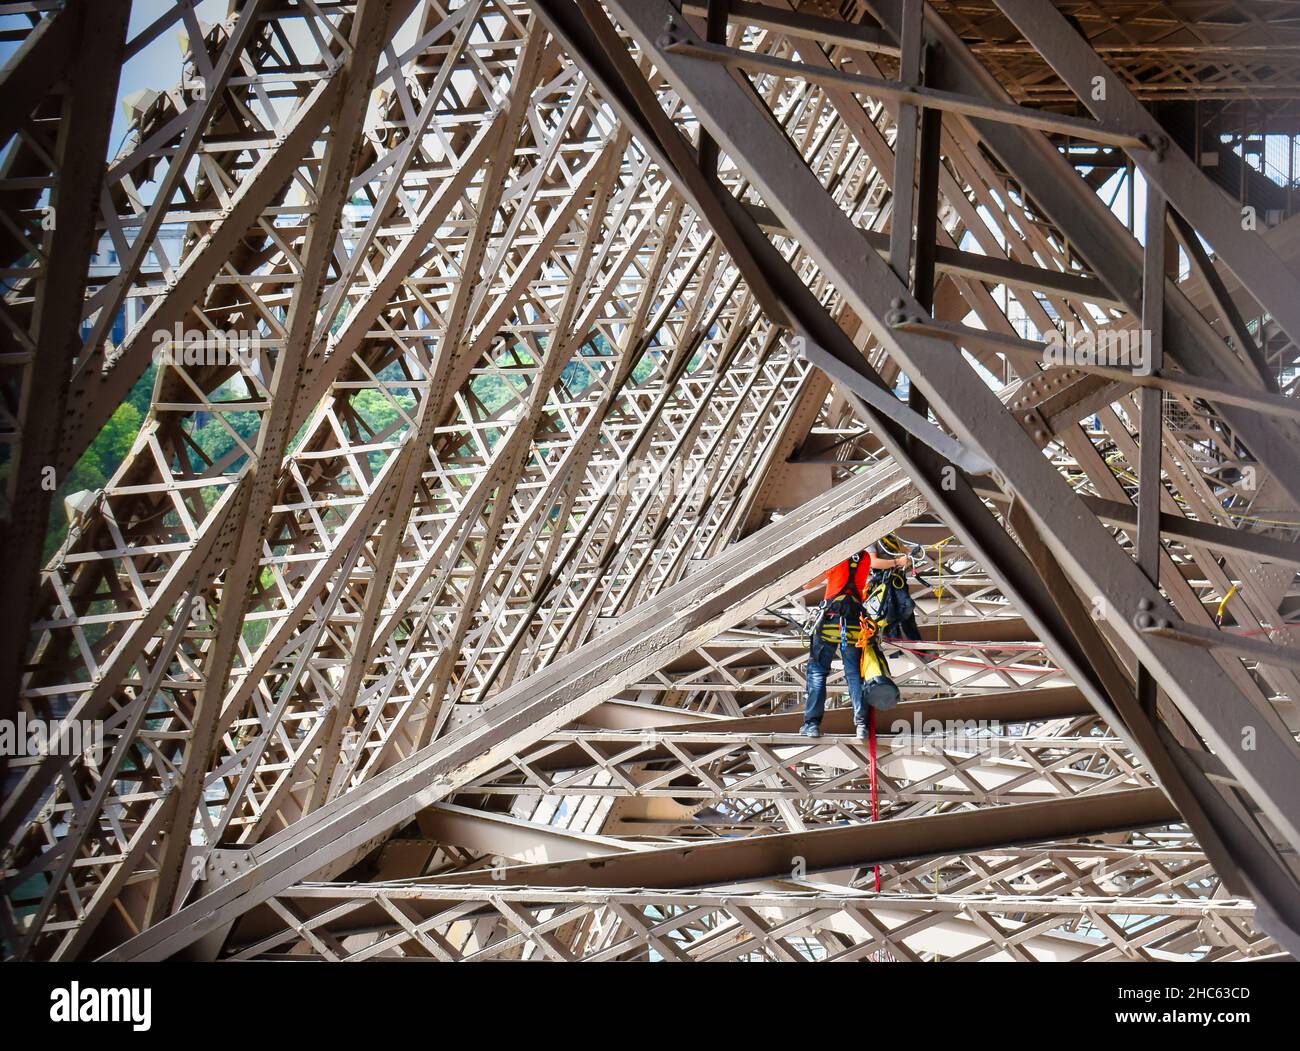 Trabajos de mantenimiento por dos operarios en la estructura metálica de la torre Eiffel en Paris, Francia Stock Photo